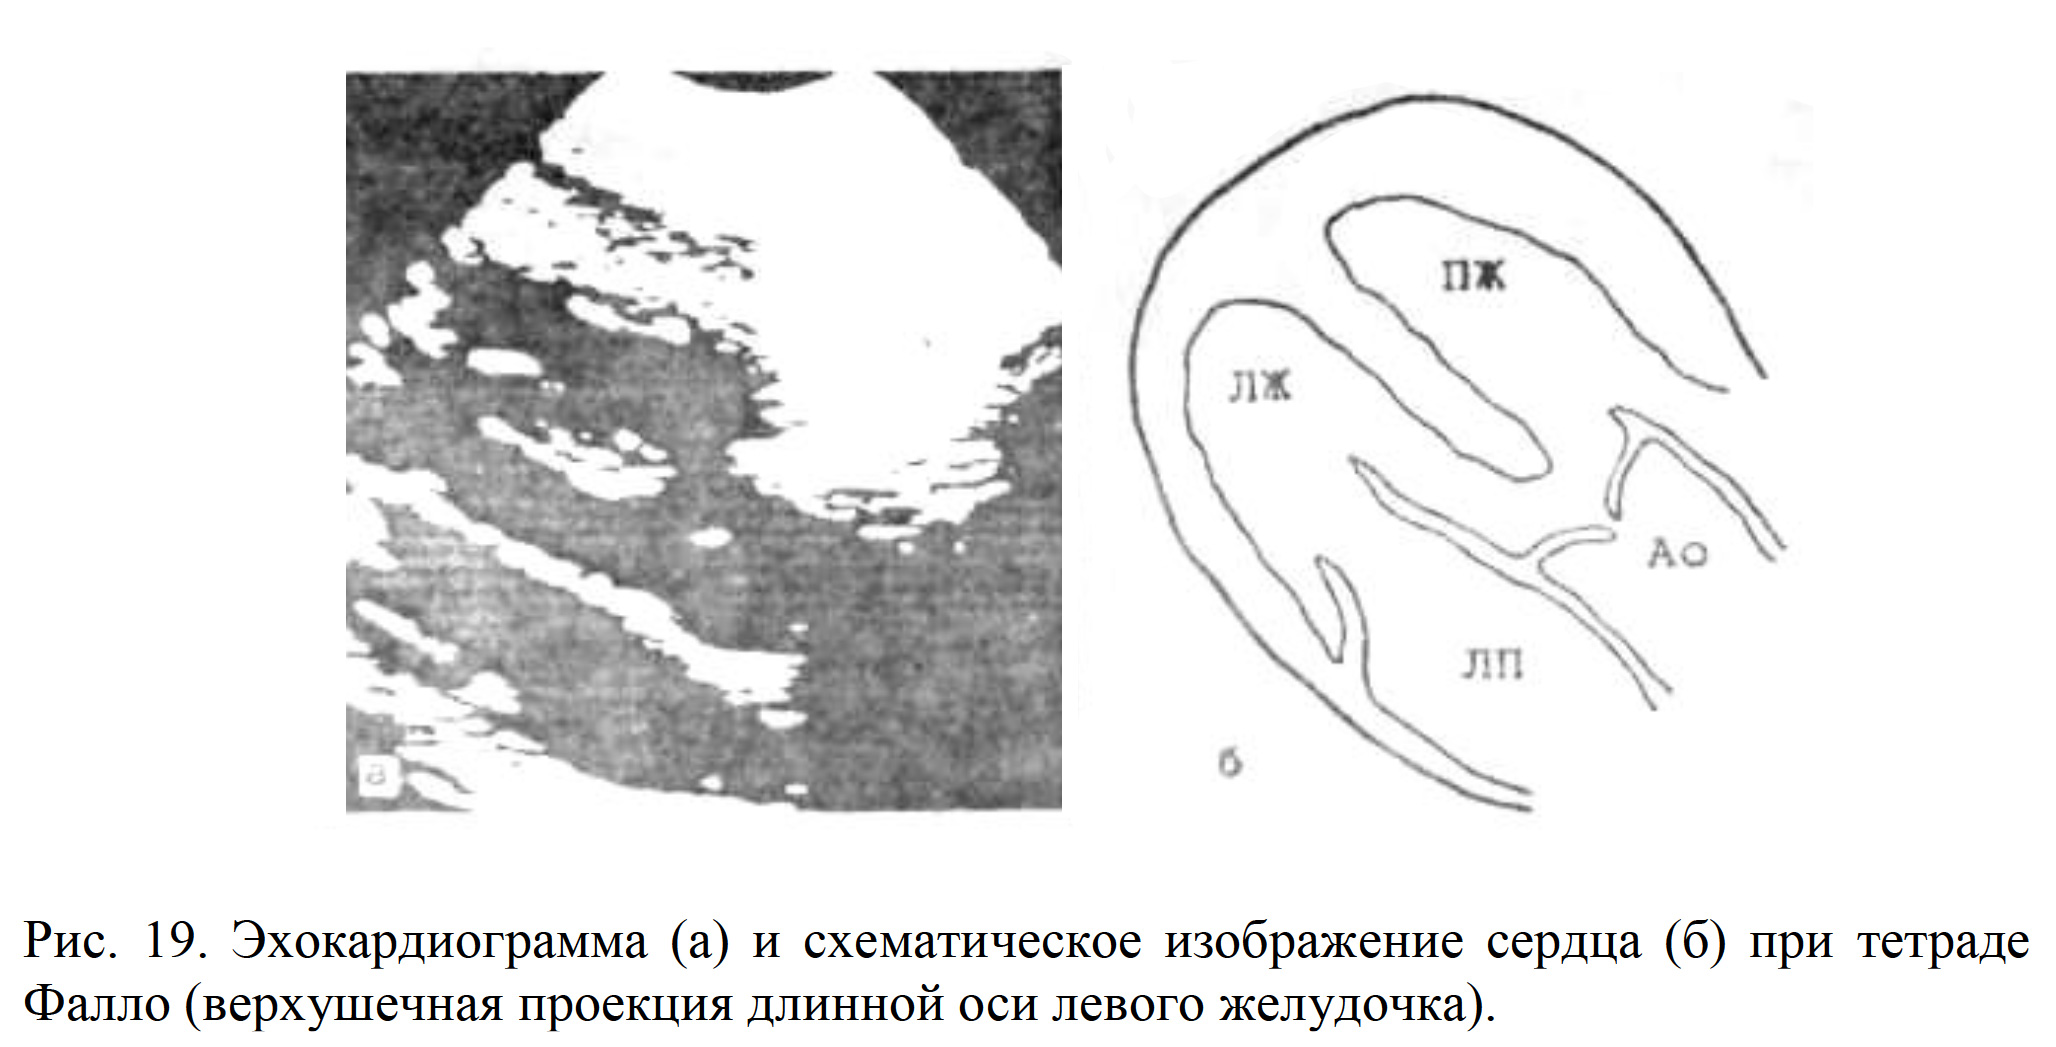 Рис. 19. Эхокардиограмма (а) и схематическое изображение сердца